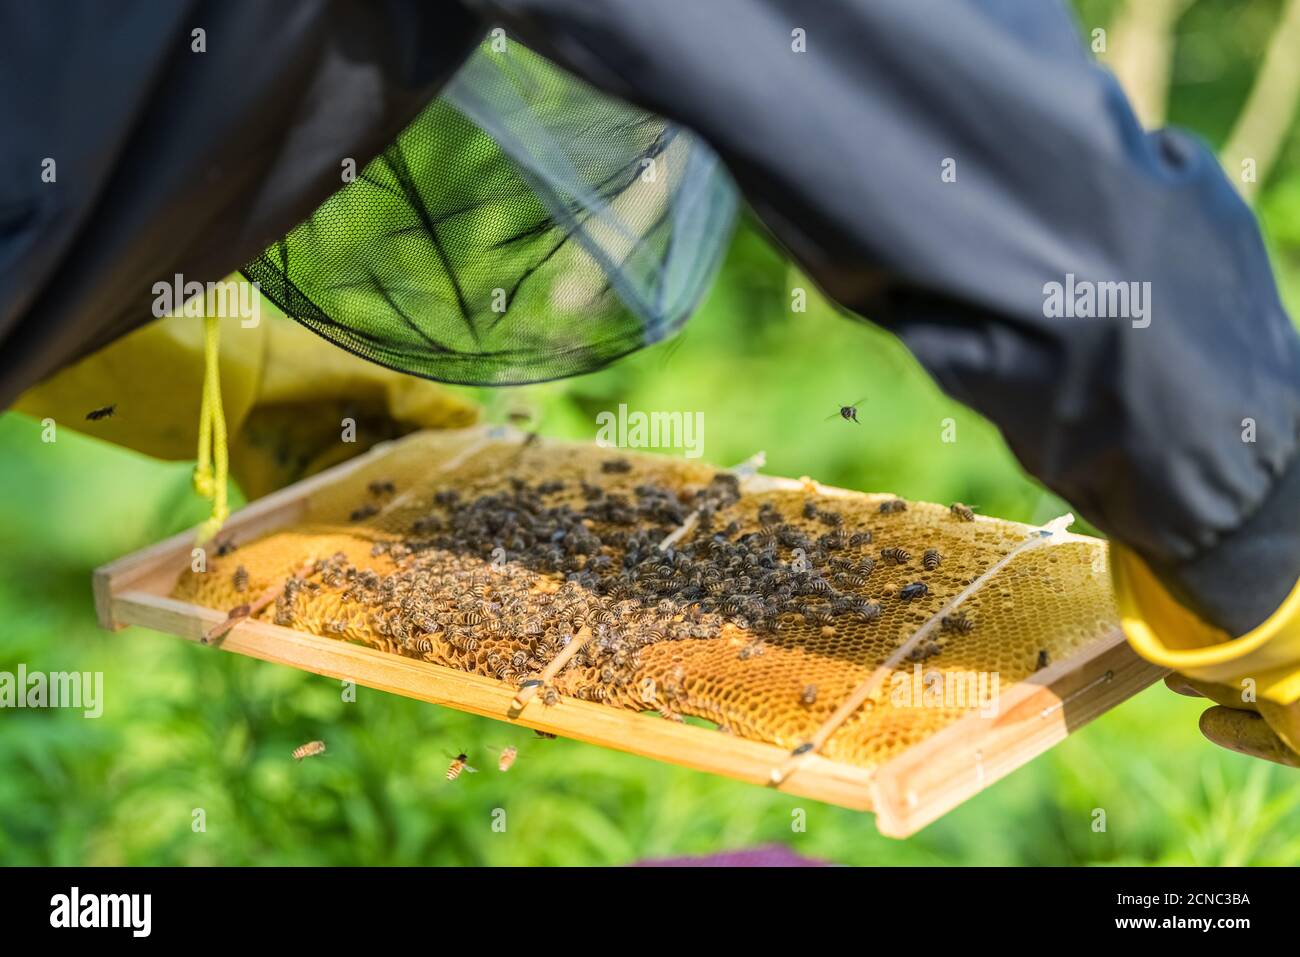 honeycomb on beekeeper's hands Stock Photo